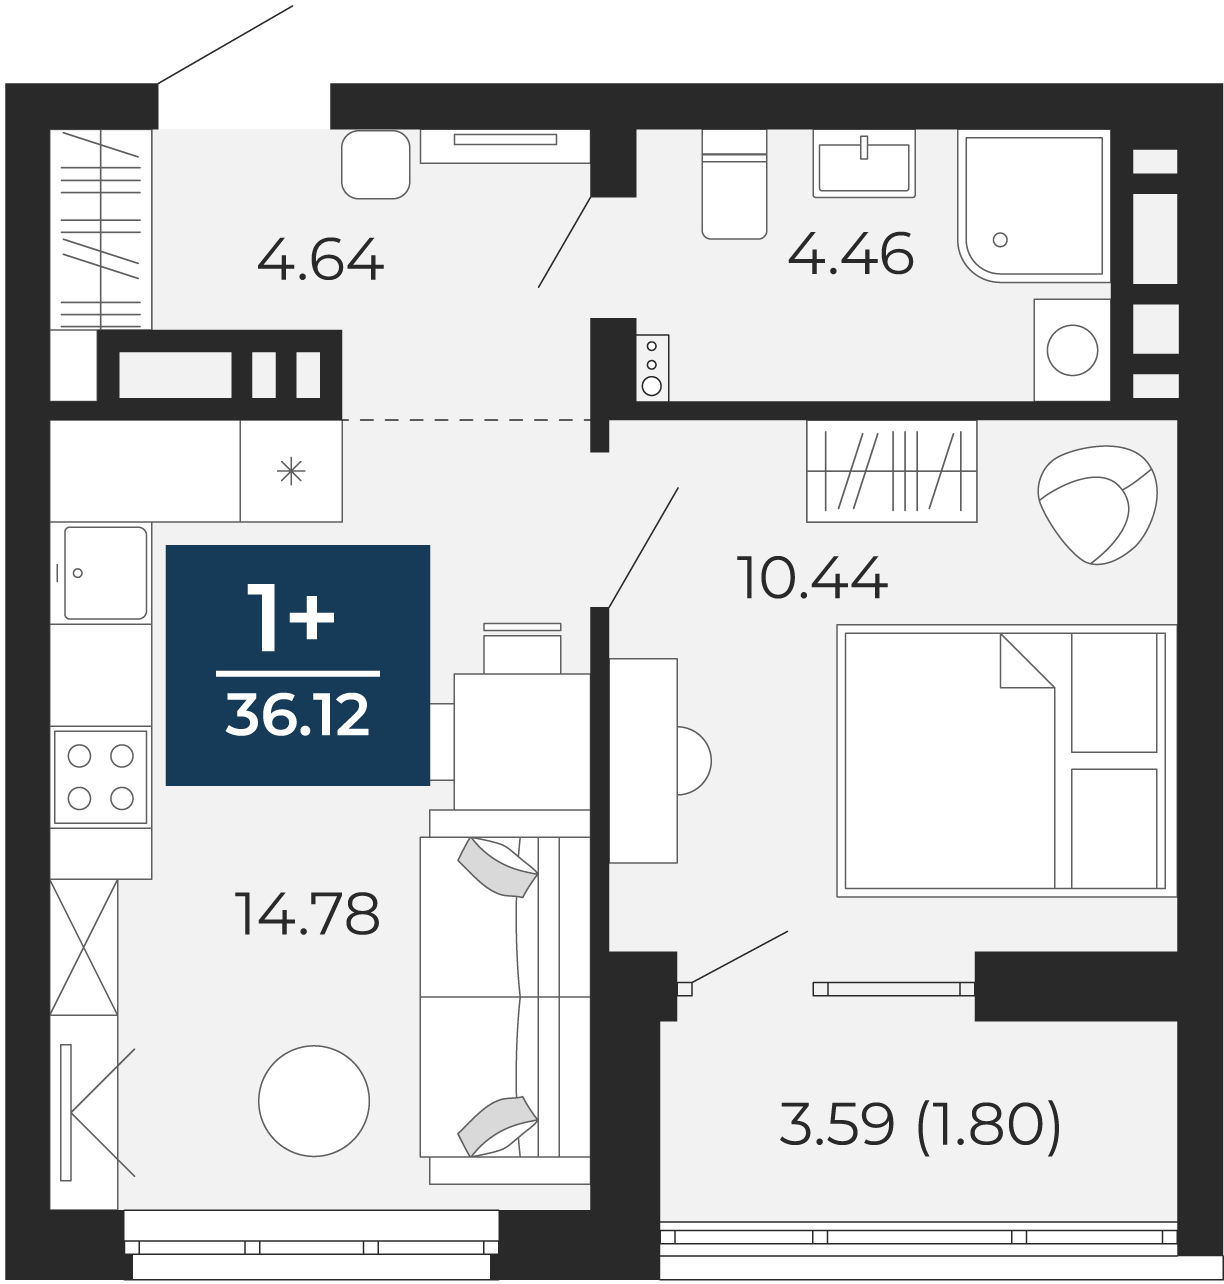 Квартира № 244, 1-комнатная, 36.12 кв. м, 13 этаж